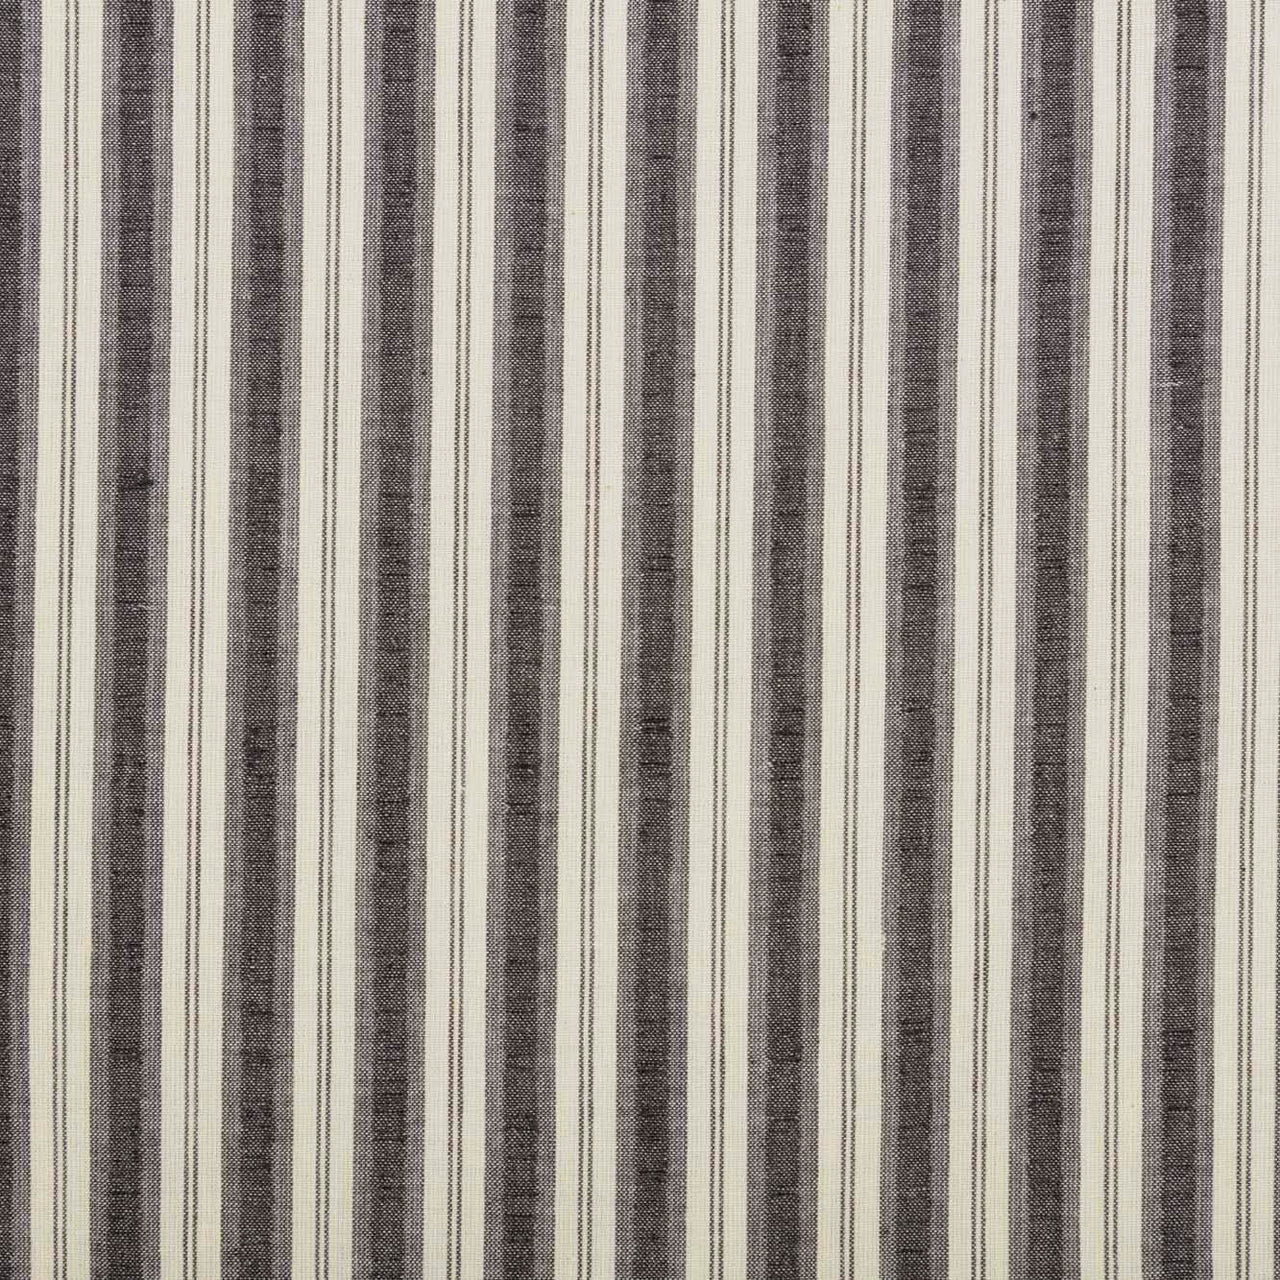 Ashmont Ticking Stripe Panel Set of 2 84x40 VHC Brands